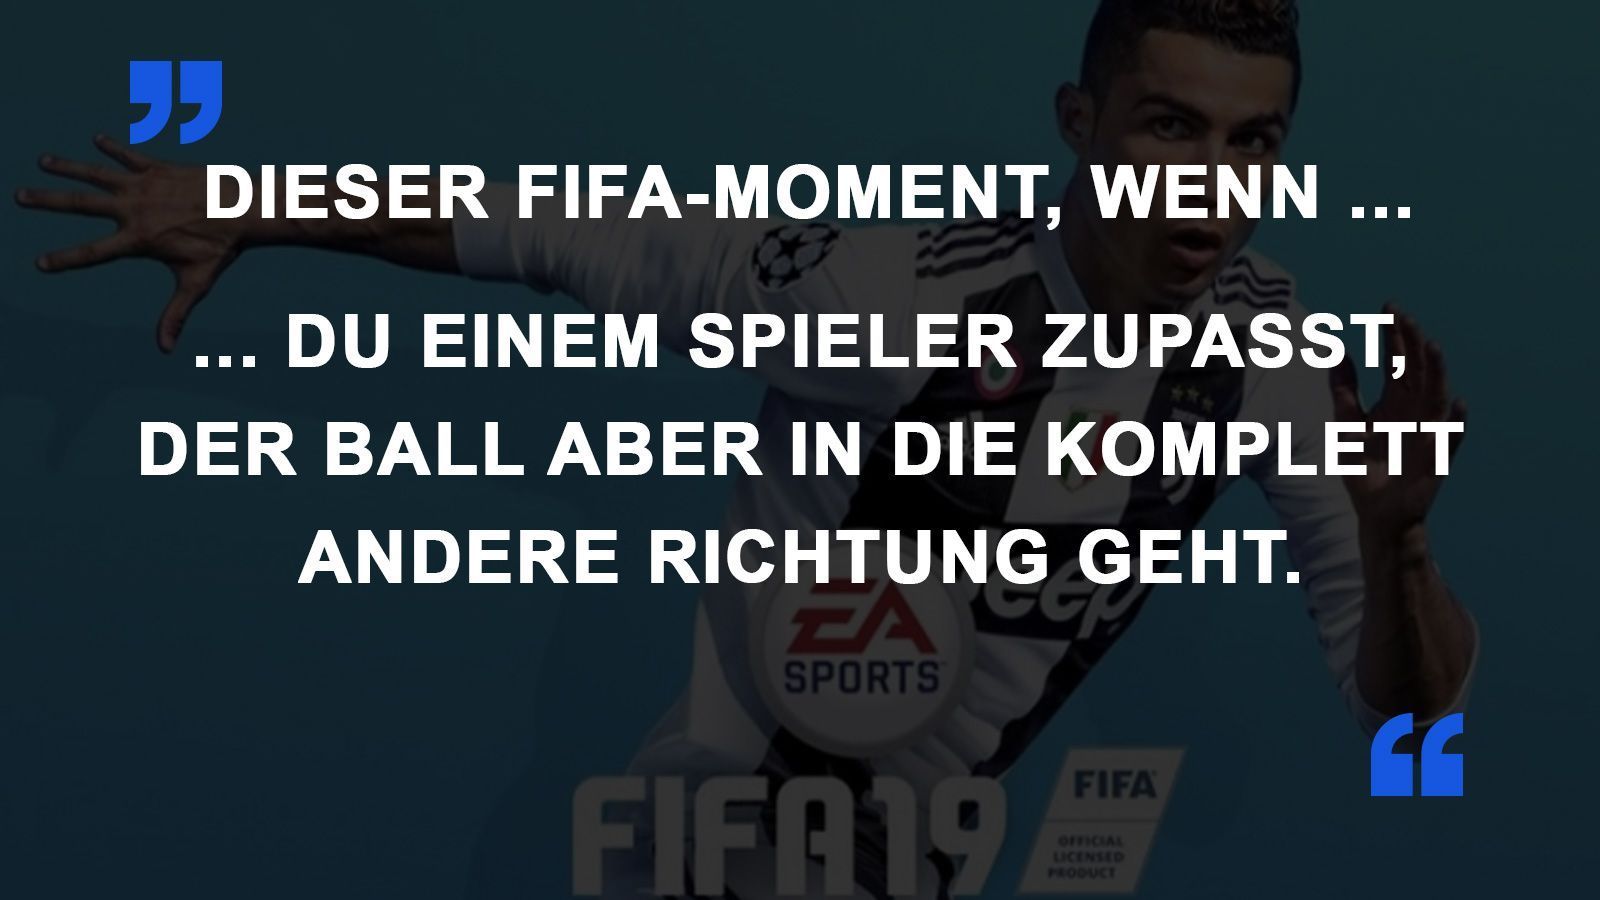 
                <strong>FIFA Momente Falsche Richtung</strong><br>
                
              